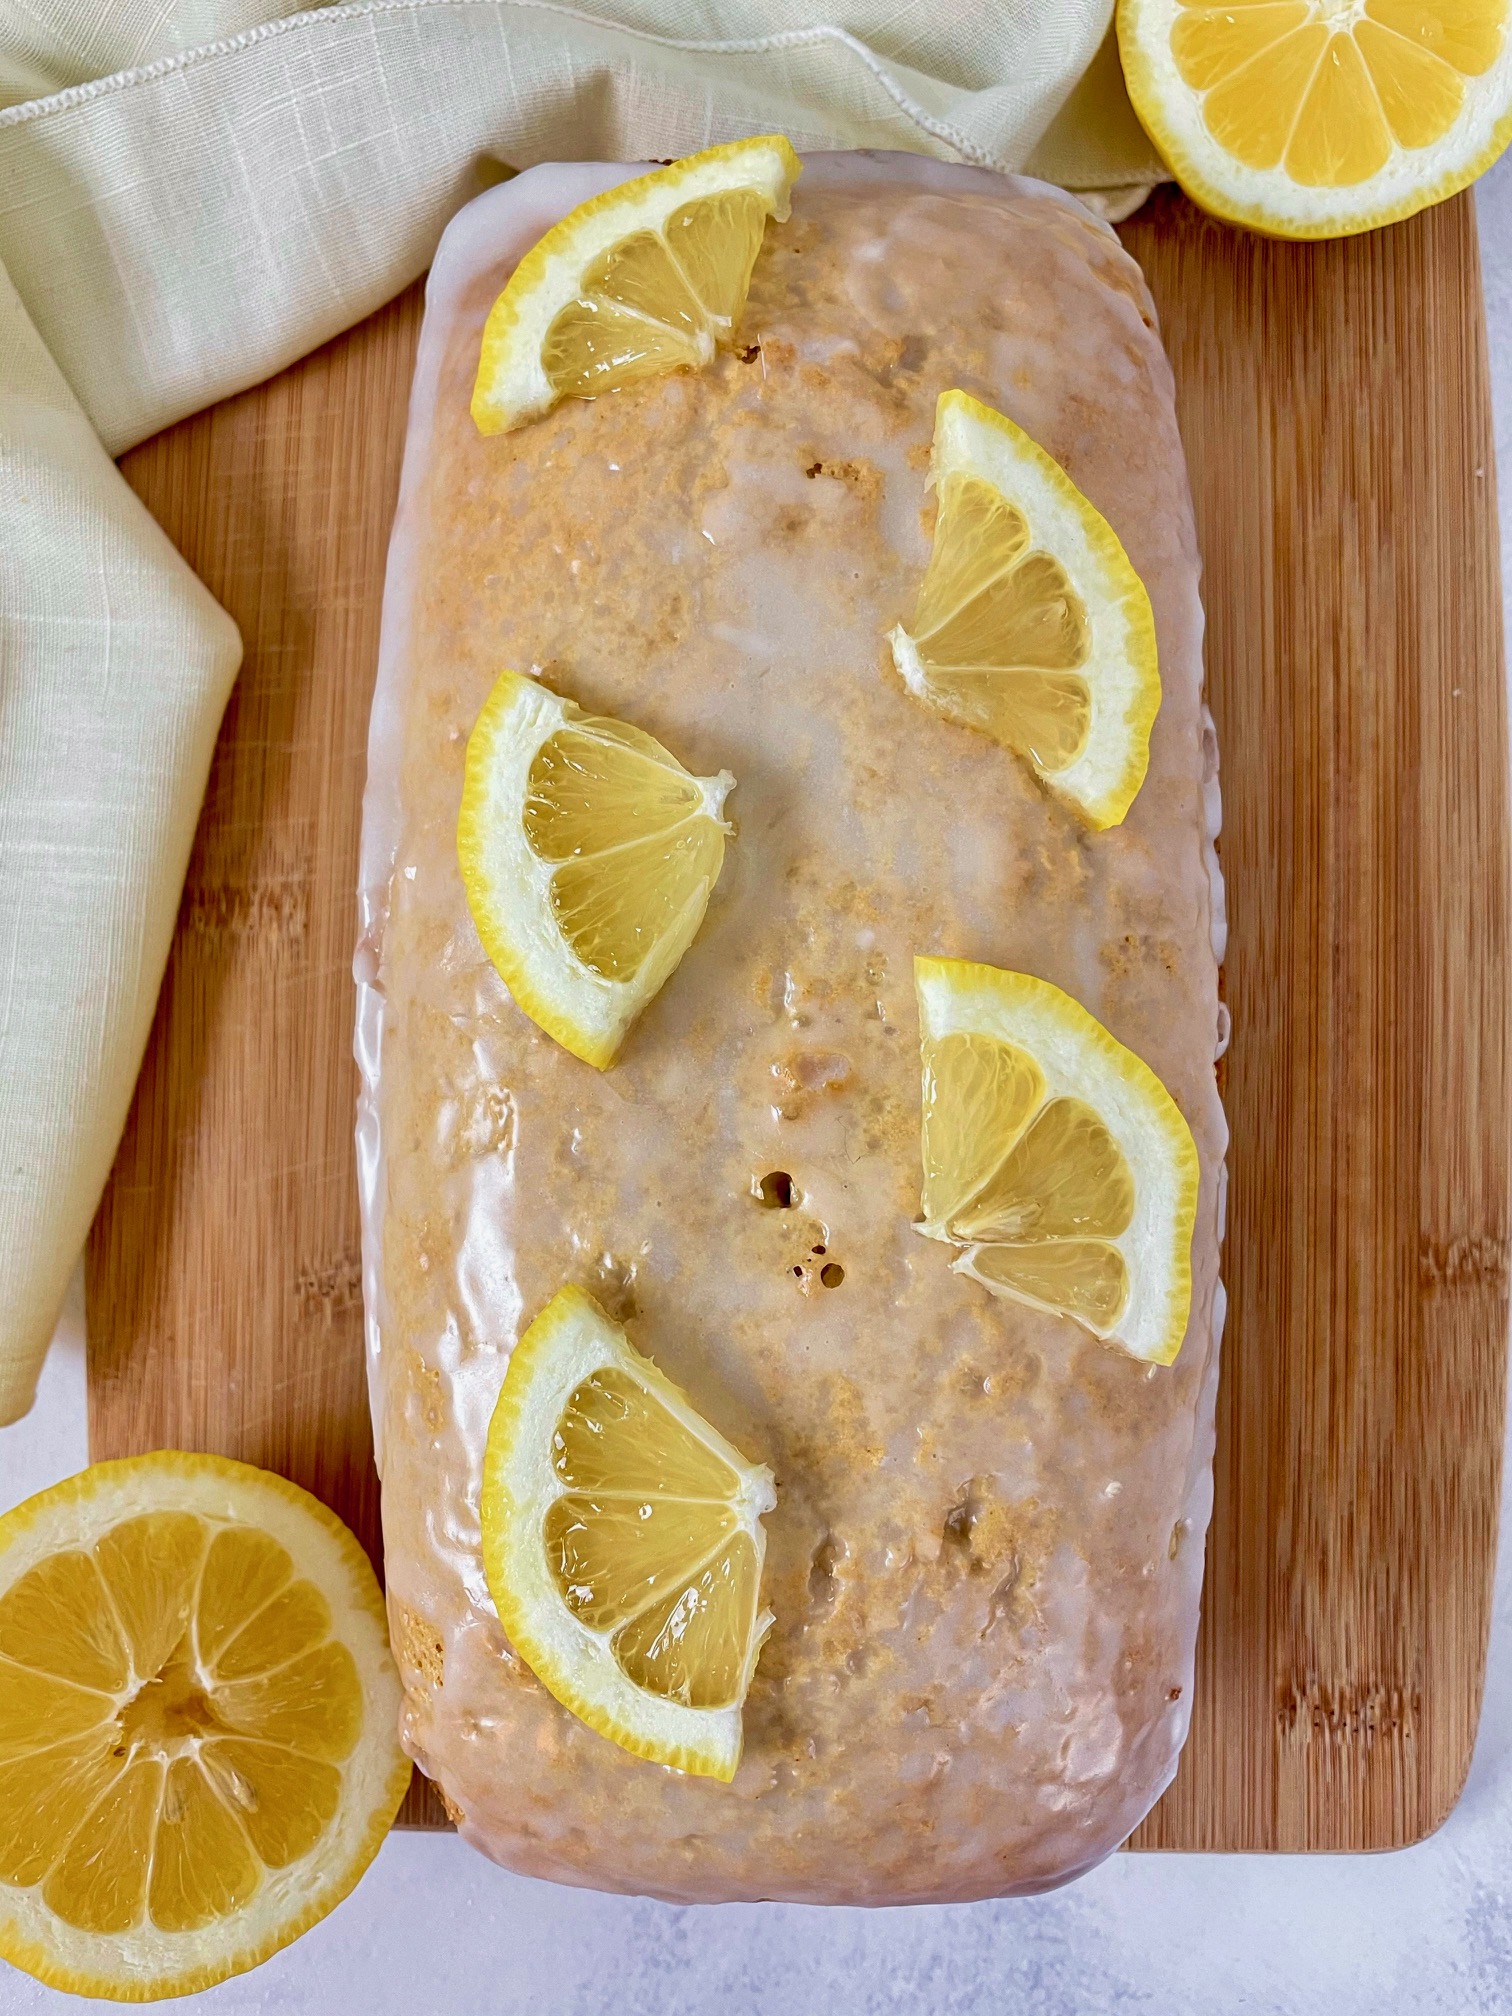 healthy lemon loaf with lemon glaze and lemon slices on top